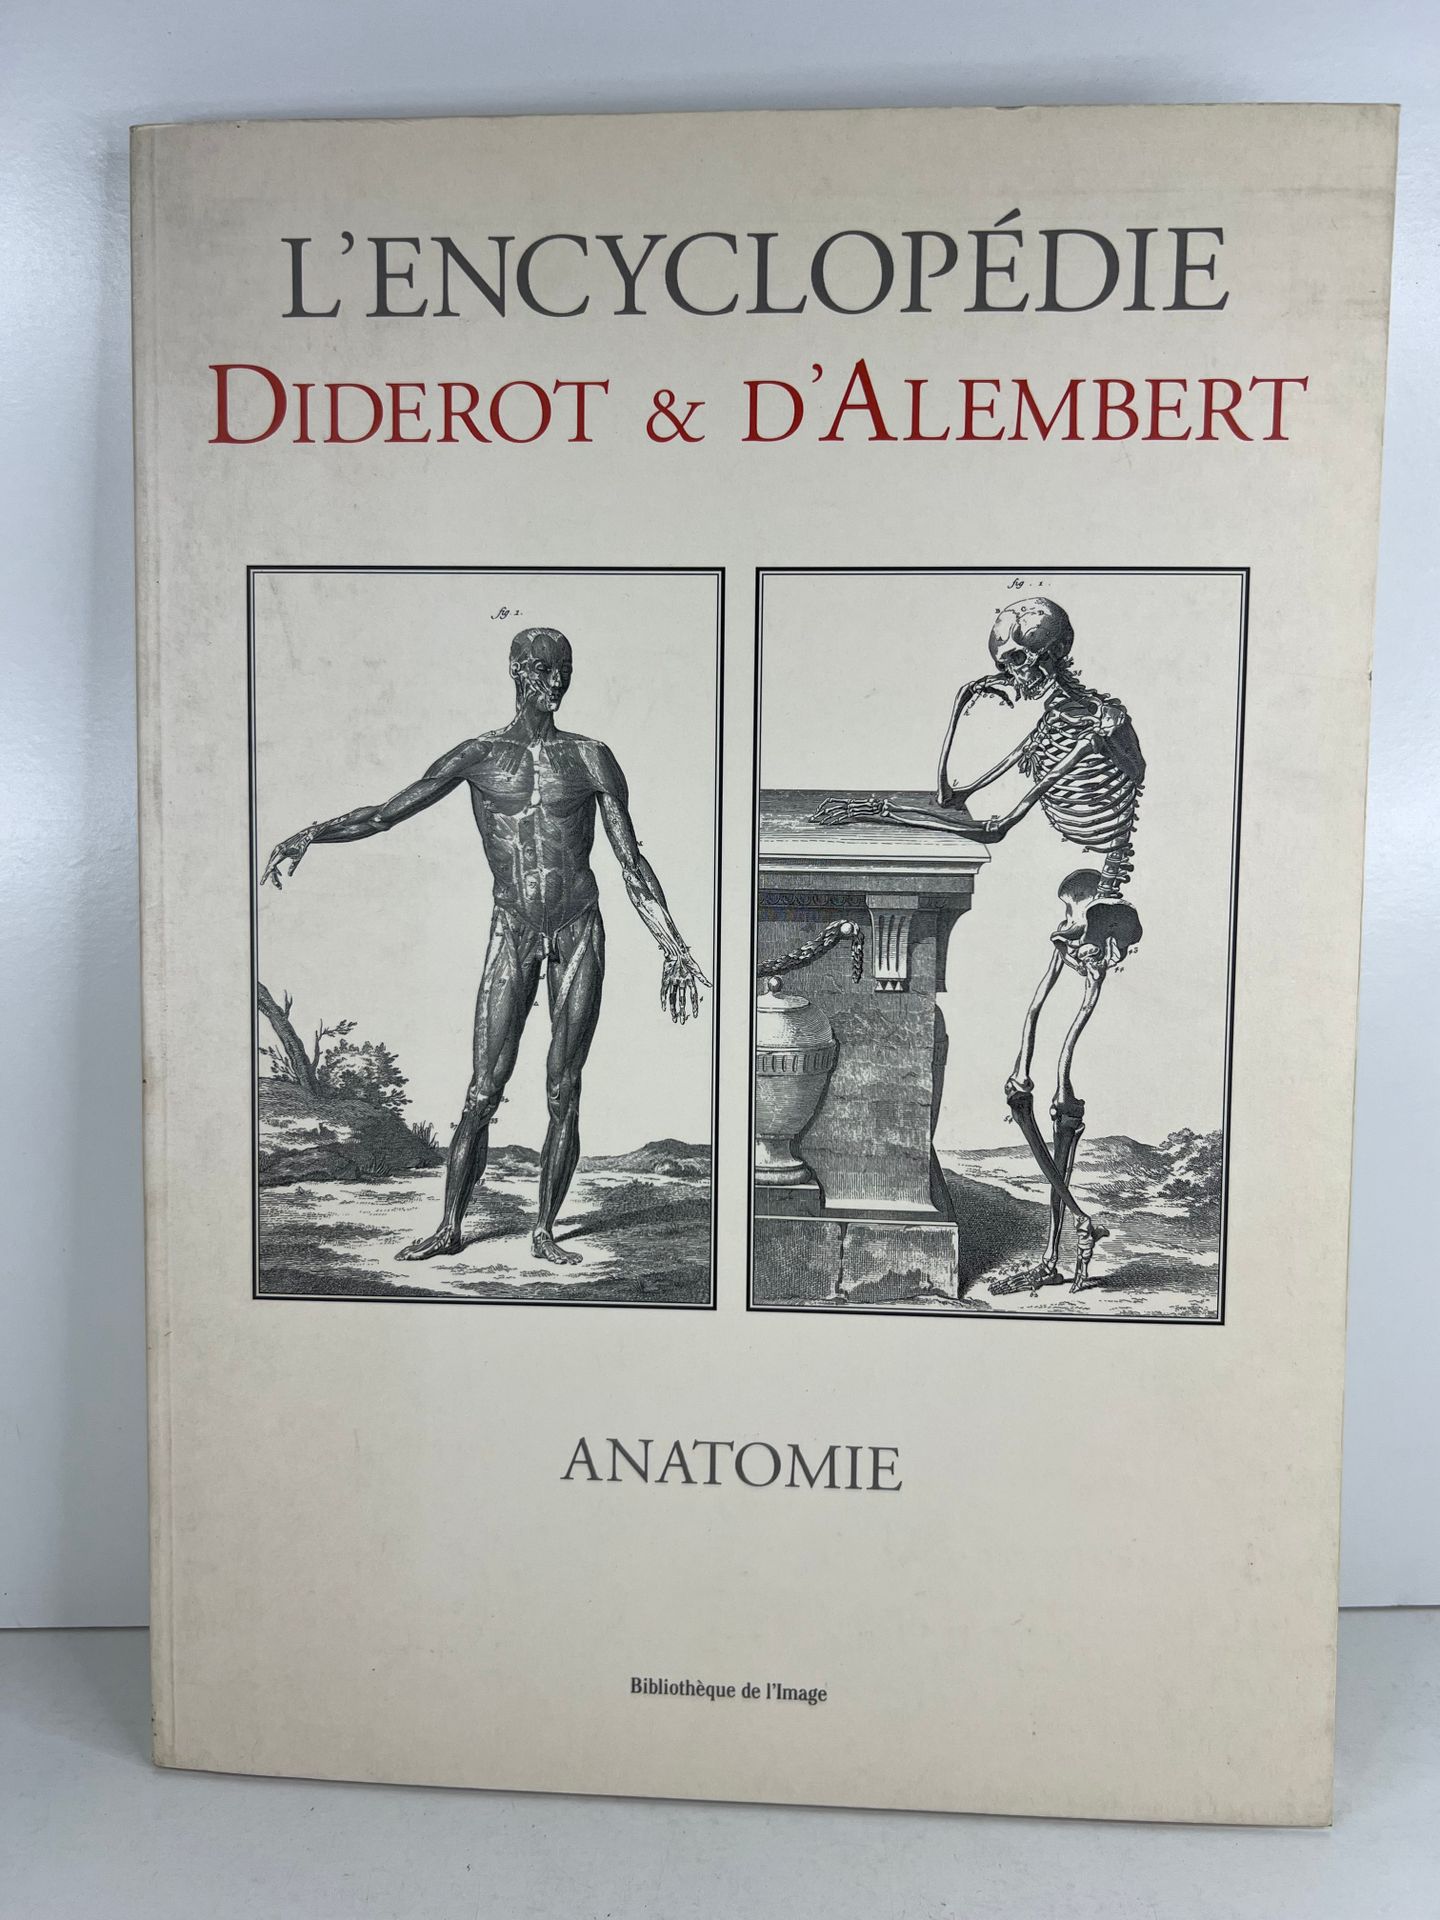 Null 合集。狄德罗和达朗贝尔百科全书，解剖学。2003 年由 Bibliothèque de l'Image 出版。4开本，软封面，书脊光滑。状况良好。